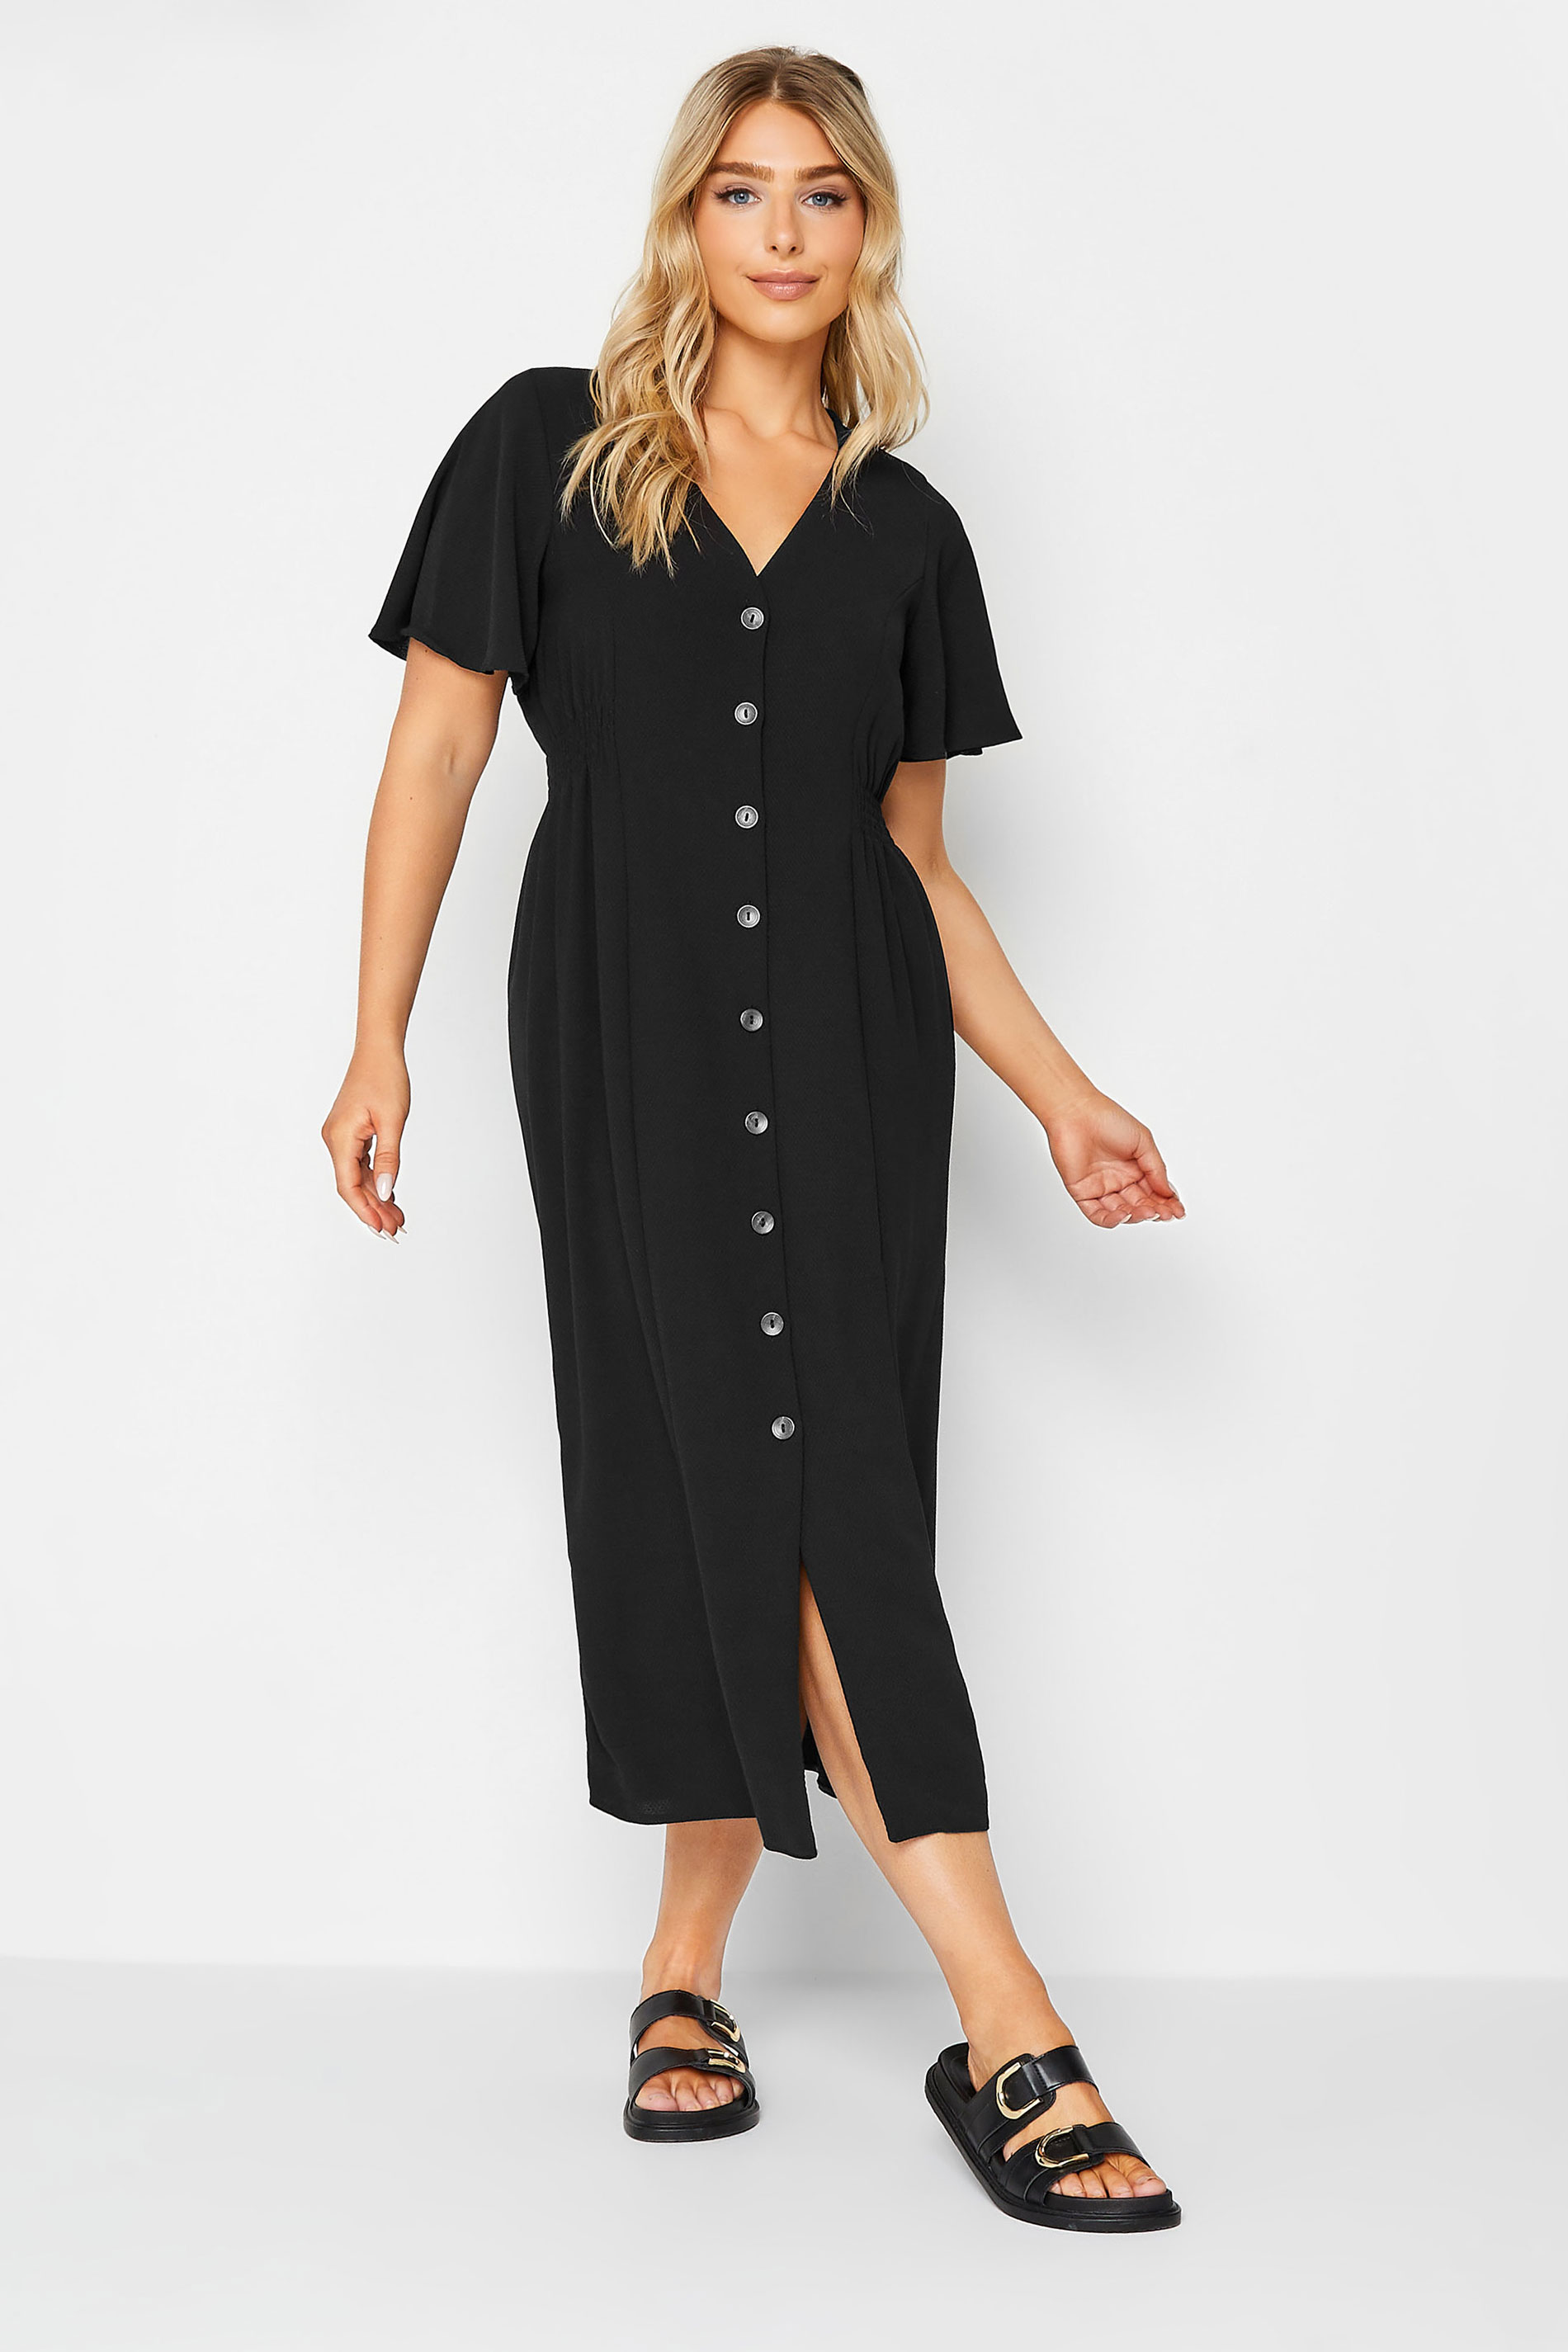 M&Co Black Shirred Waist Button Through Midi Dress | M&Co 1